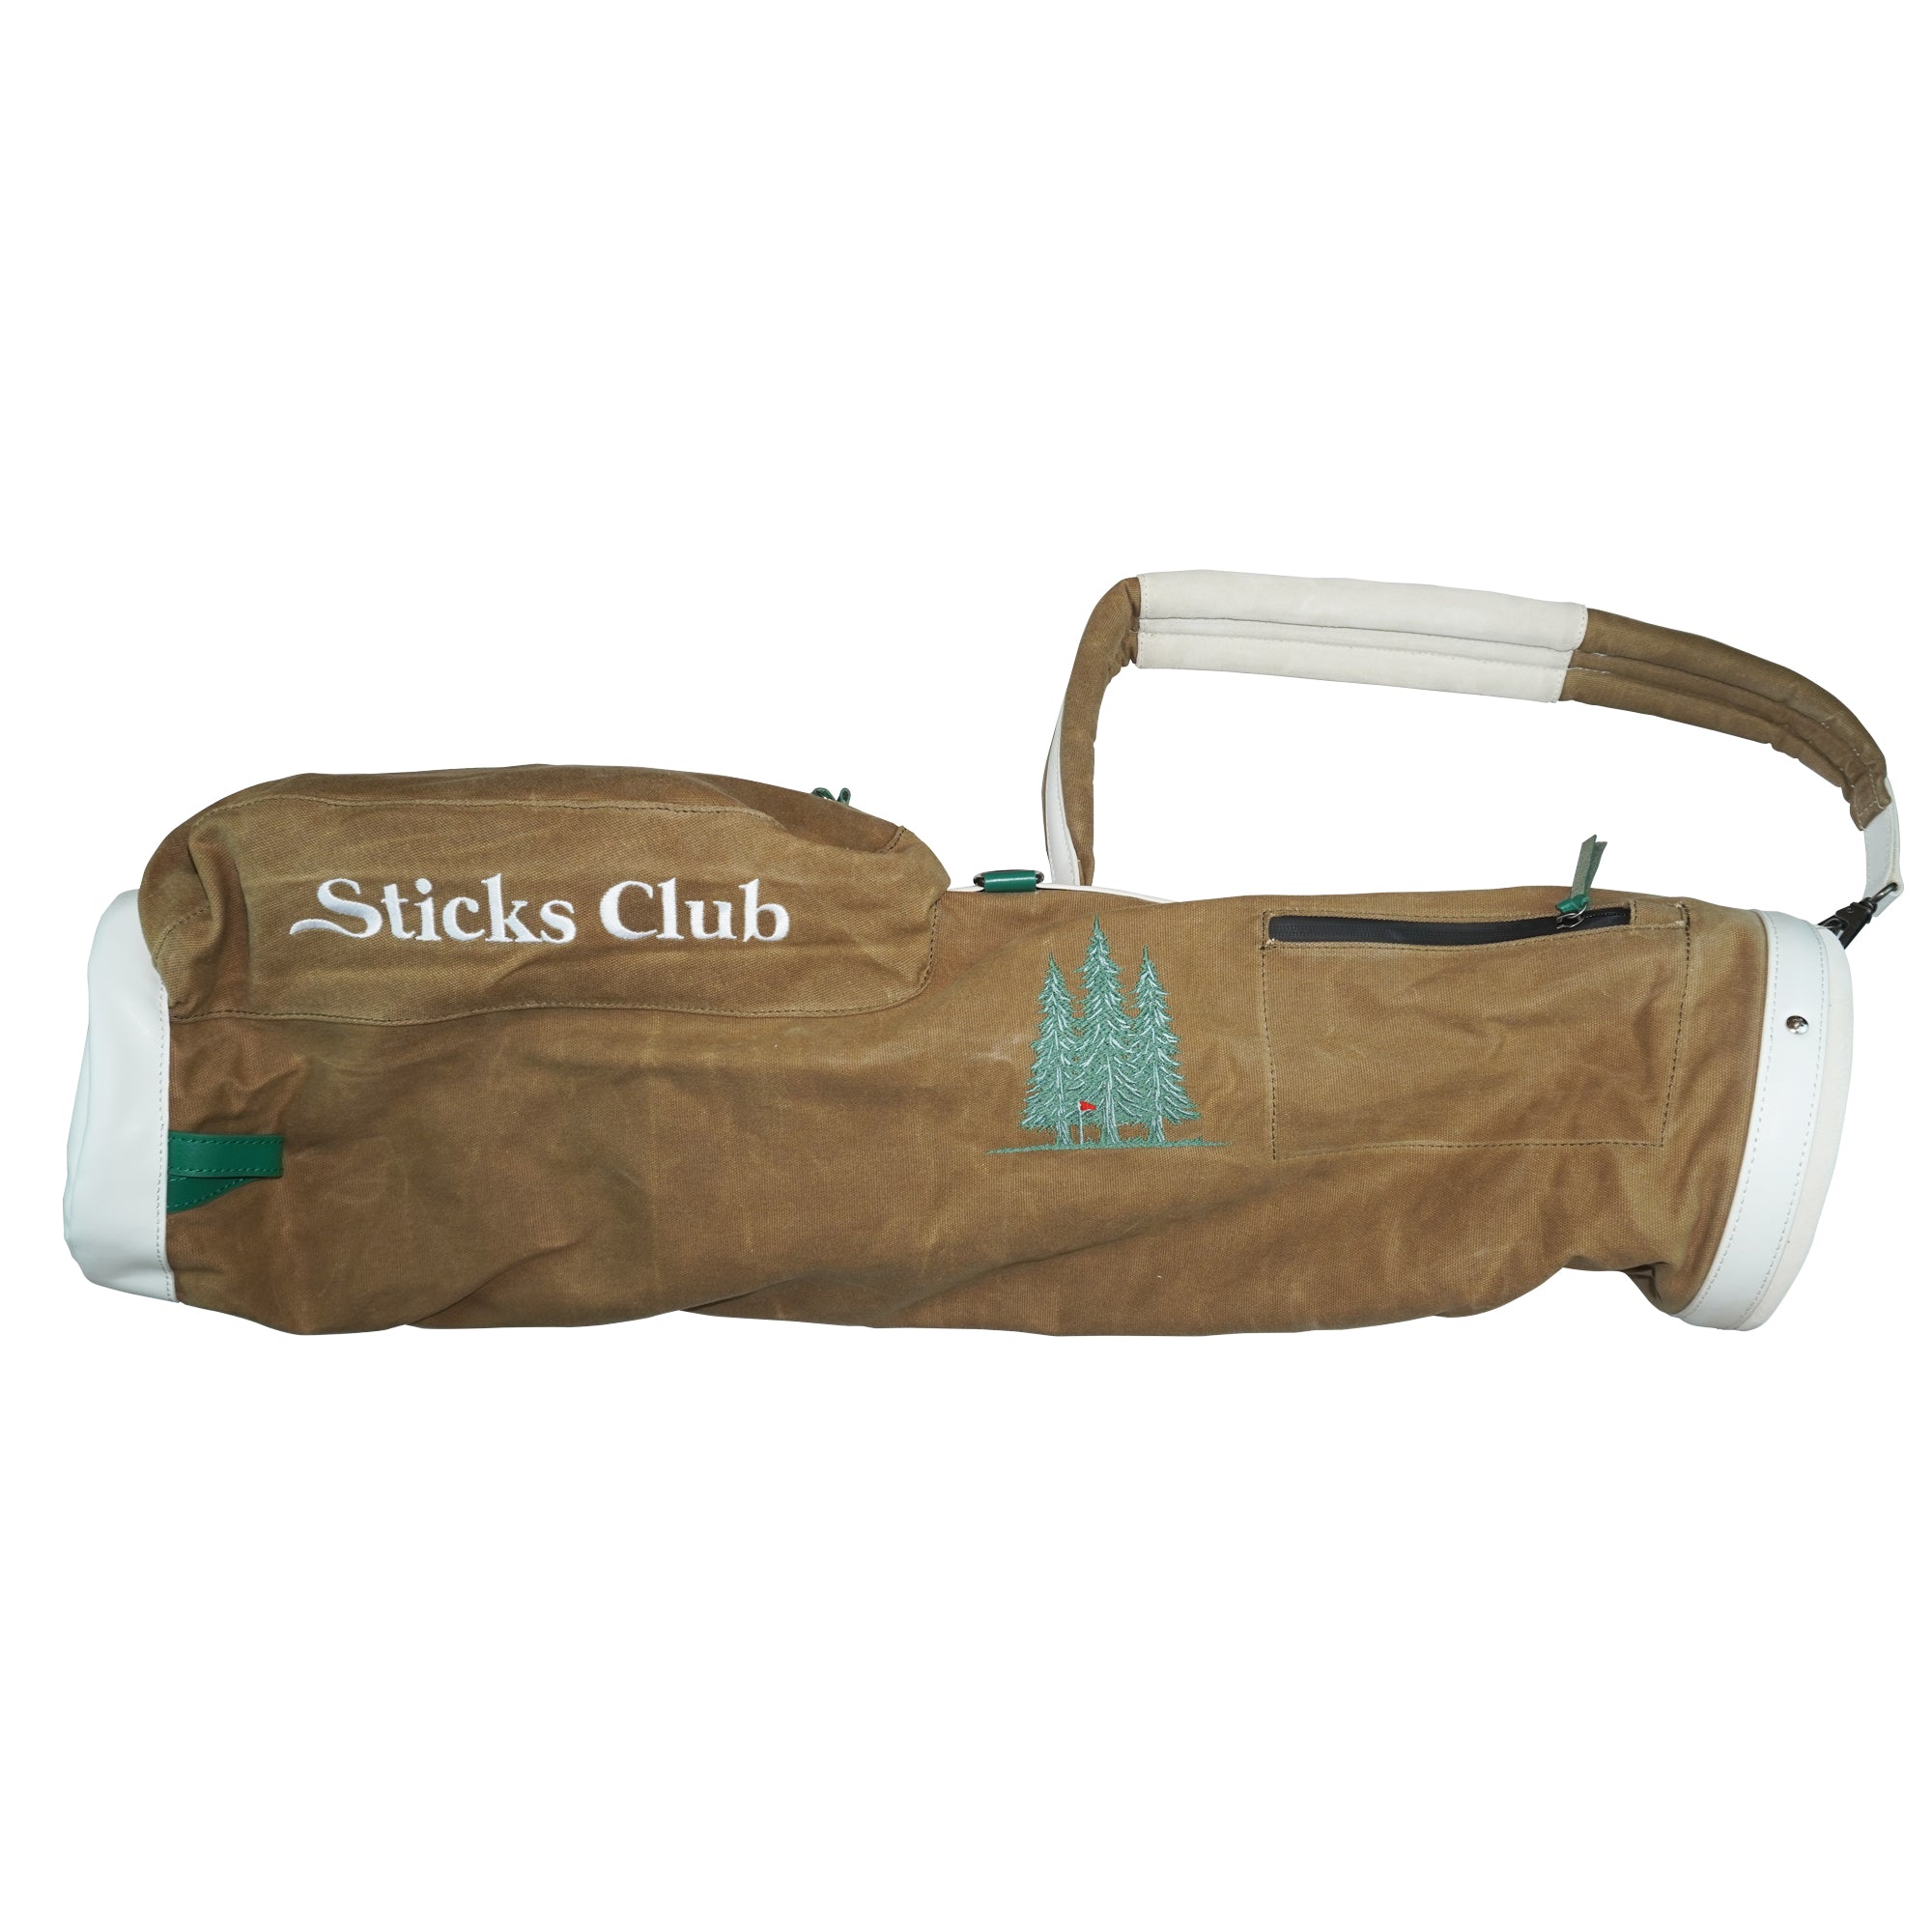 The Sticks Club Khaki Carry Bag